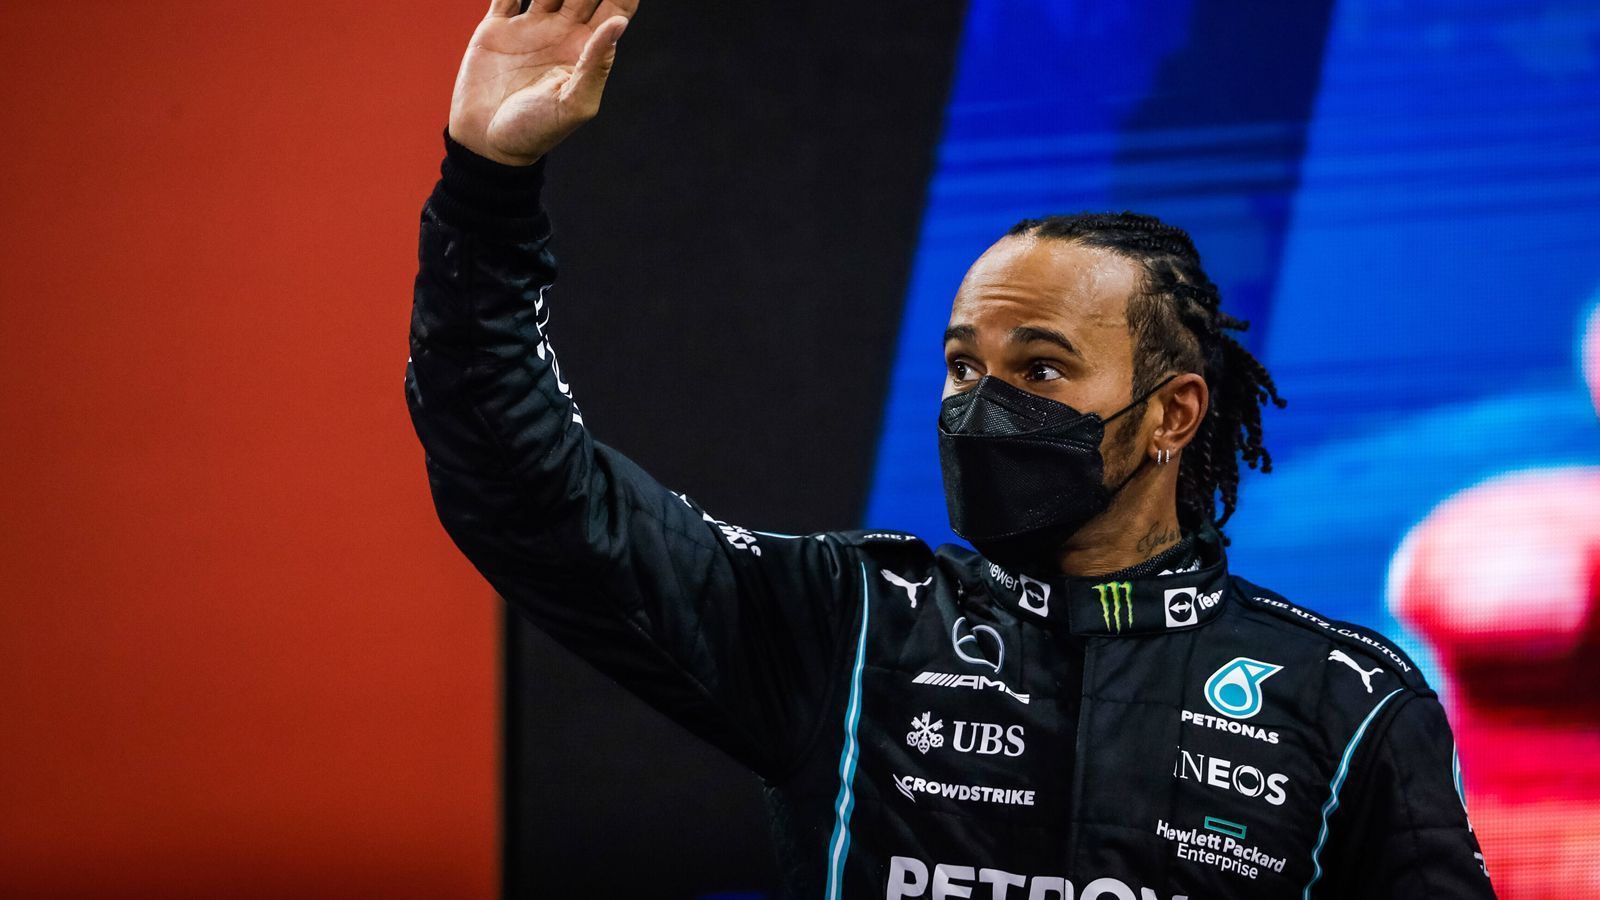 
                <strong>Formel 1: Titelkampf-Blues? Darum macht Lewis Hamilton weiter</strong><br>
                Lewis Hamilton schweigt nach dem irren und kontroversen Saisonfinale der Formel 1. Wie sieht es in ihm aus? Was sagt der Mercedes-Star zum endgültigen Verlust der WM? Greift er nächstes Jahr noch einmal an? Keiner weiß es ganz genau. ran sagt, welche Gründe dafür sprechen, dass Hamilton weitermacht.
              